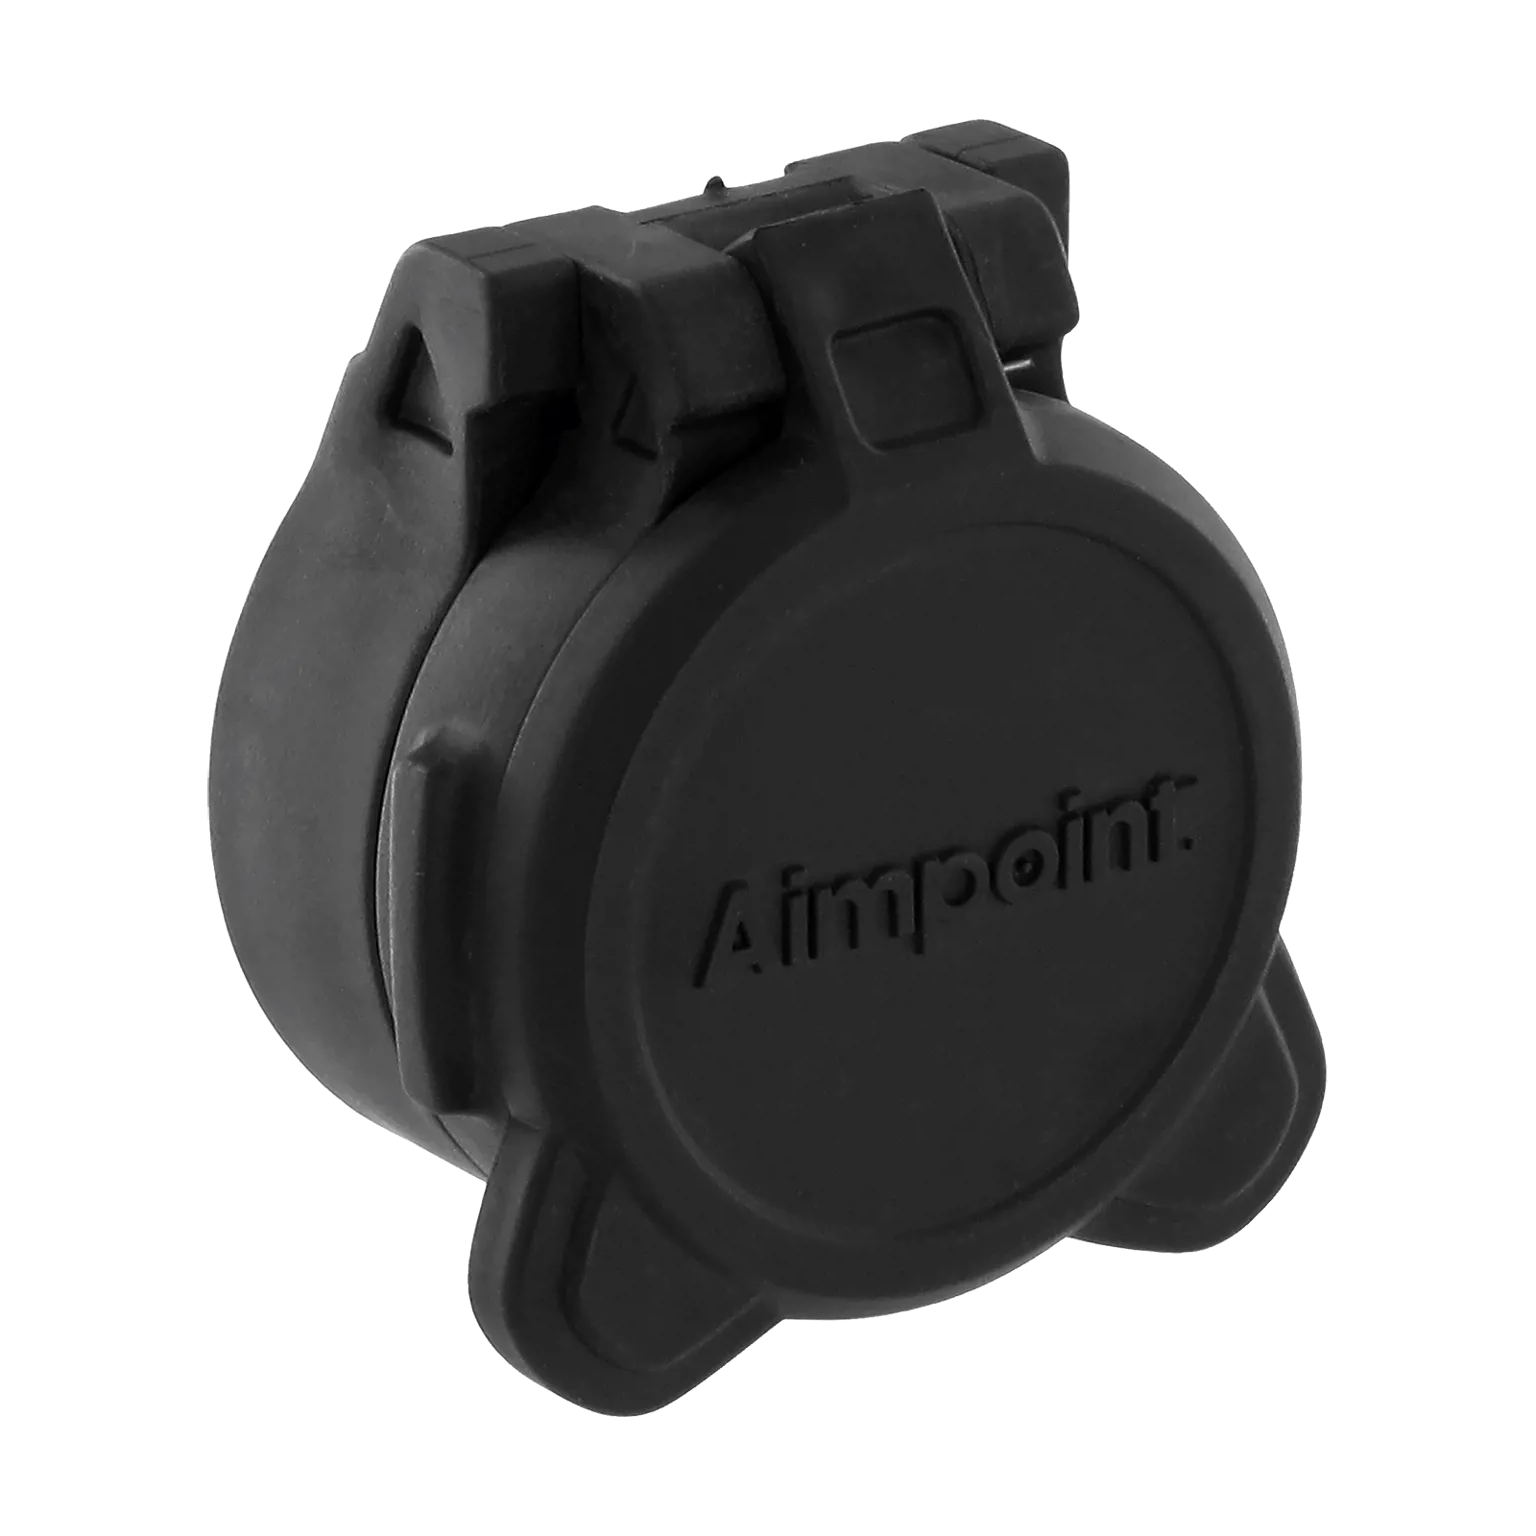 Tapa abatible objetivo - Frontal ARD Sólido para miras de 30 mm de la serie Comp™ - 3